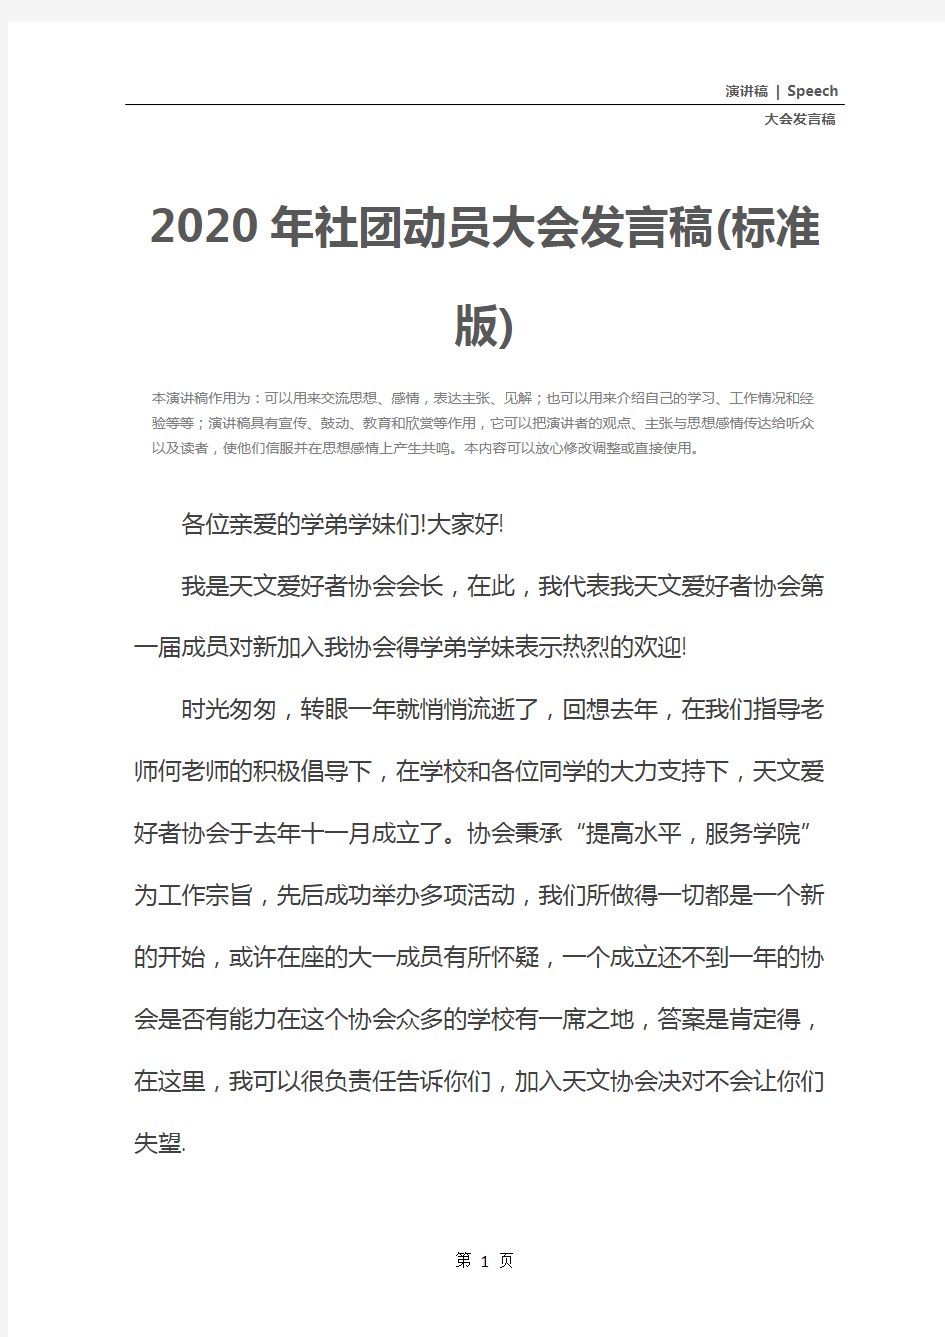 2020年社团动员大会发言稿(标准版)